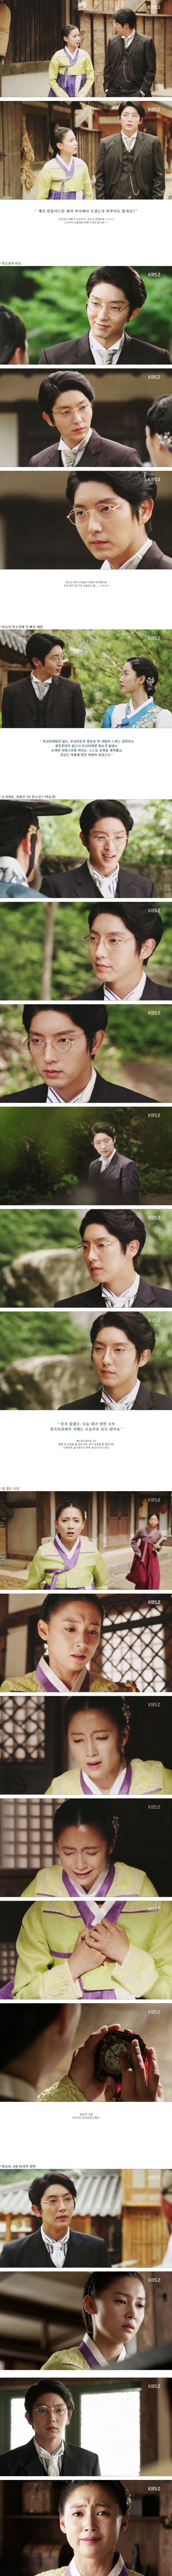 episode 9 captures for the Korean drama 'The Joseon Shooter'